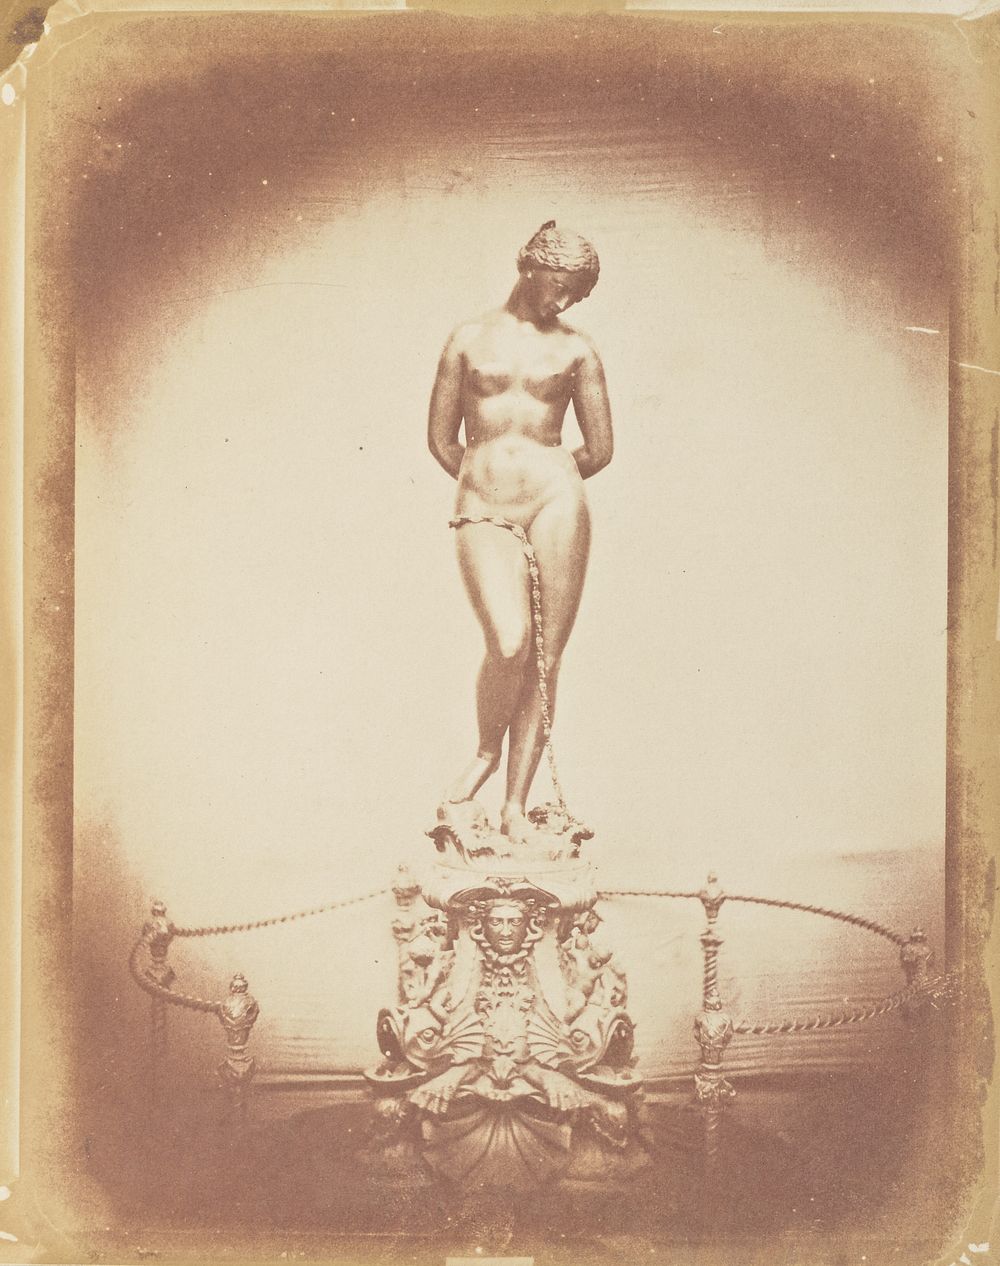 Statue of Nude Woman by Hugh Owen